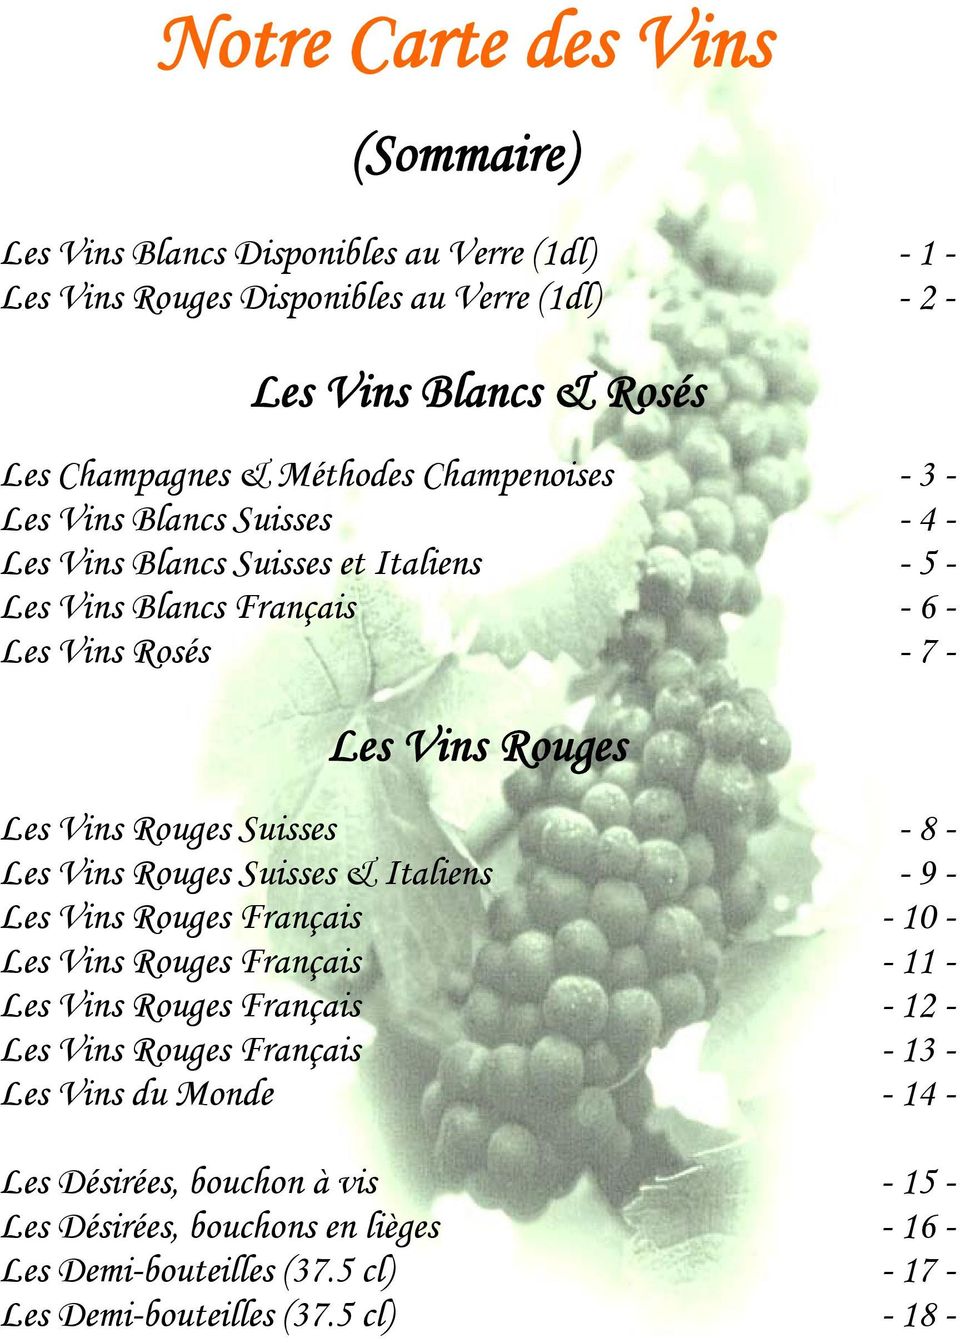 Rouges Suisses - 8 - Les Vins Rouges Suisses & Italiens - 9 - Les Vins Rouges Français - 10 - Les Vins Rouges Français - 11 - Les Vins Rouges Français - 12 - Les Vins Rouges